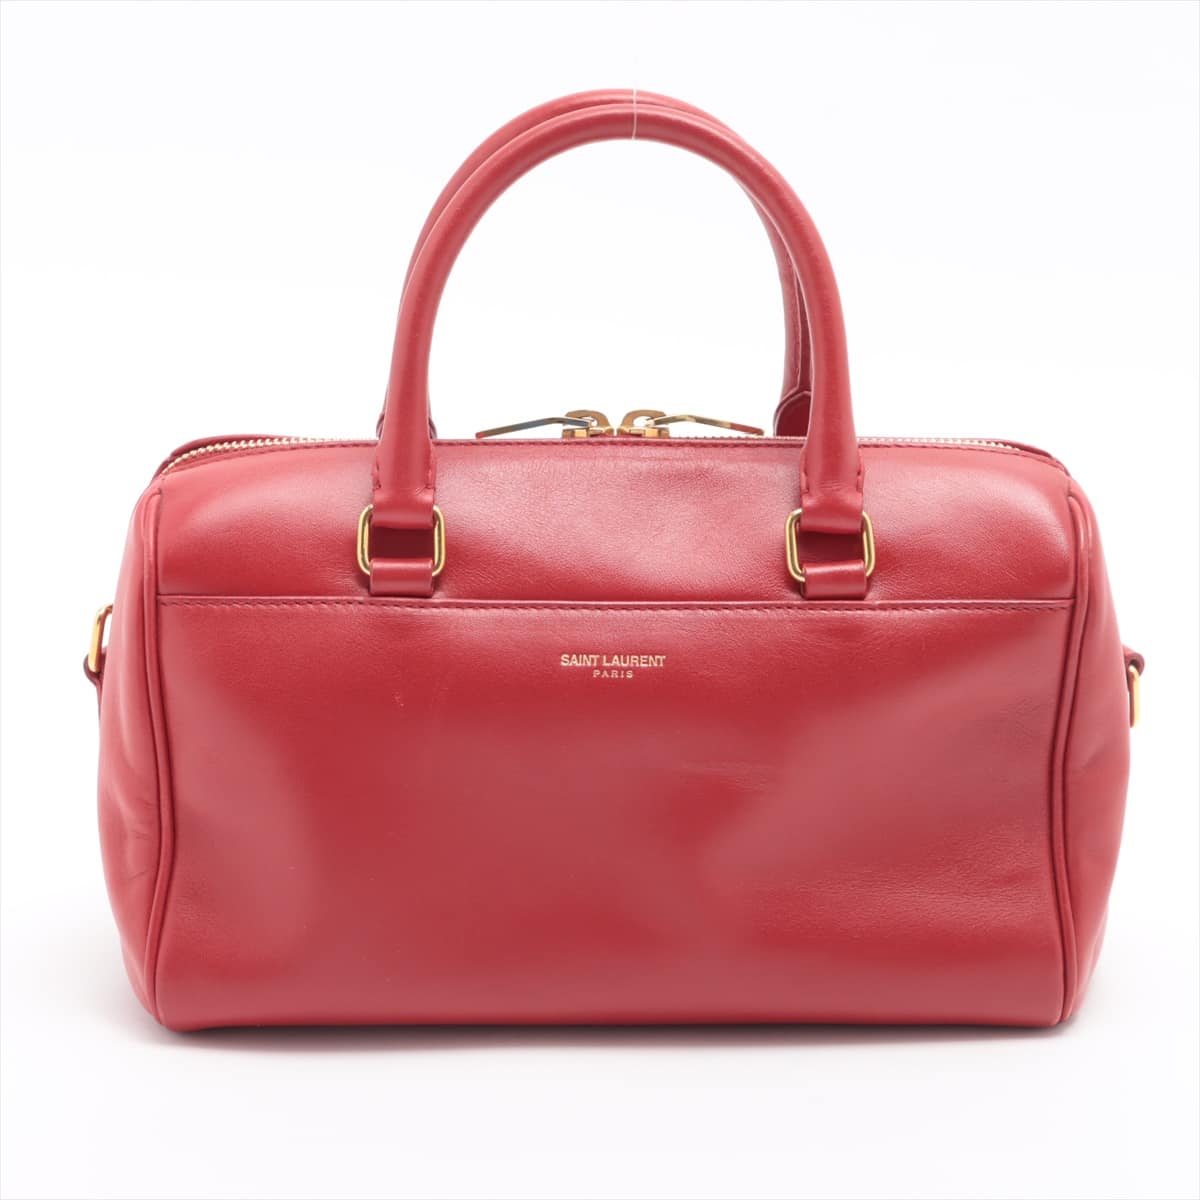 Saint Laurent Paris Baby Duffle Leather 2way shoulder bag Red 330958